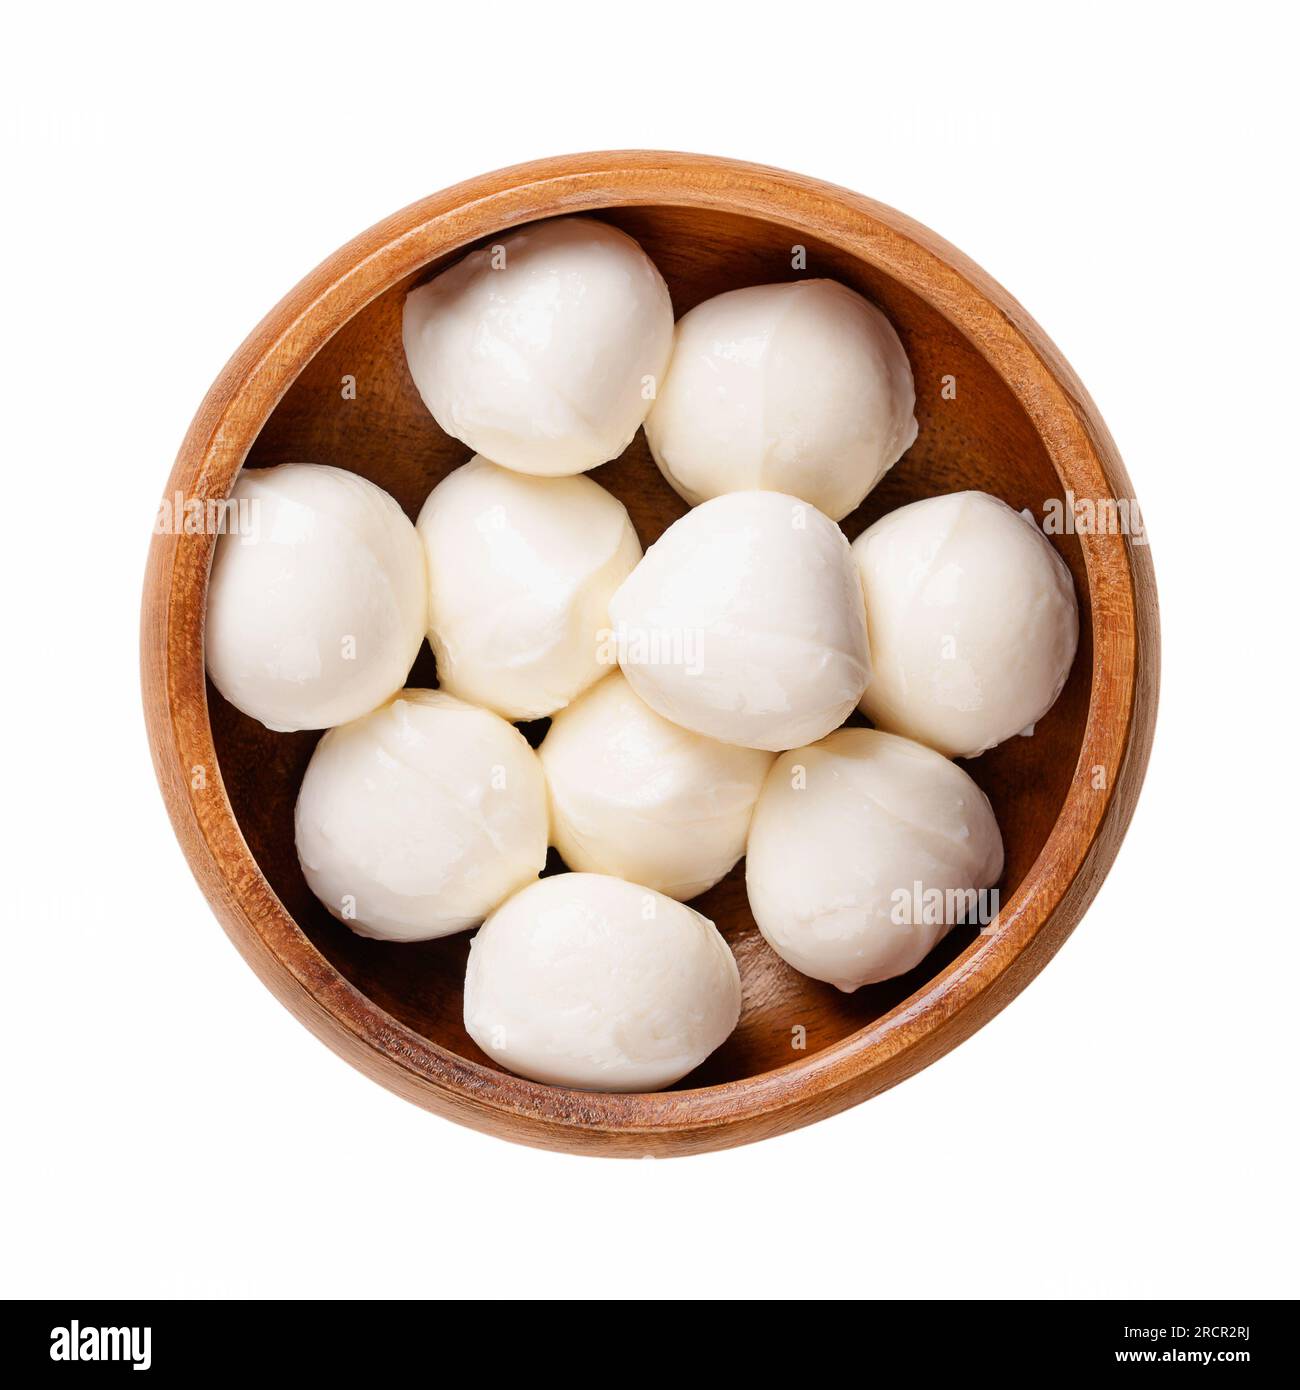 Mini boules de mozzarella, dans un bol en bois. Fromage blanc frais du sud de l'Italie fabriqué à partir de lait selon la méthode des pâtes filata, également appelé bambini bocconcini. Banque D'Images